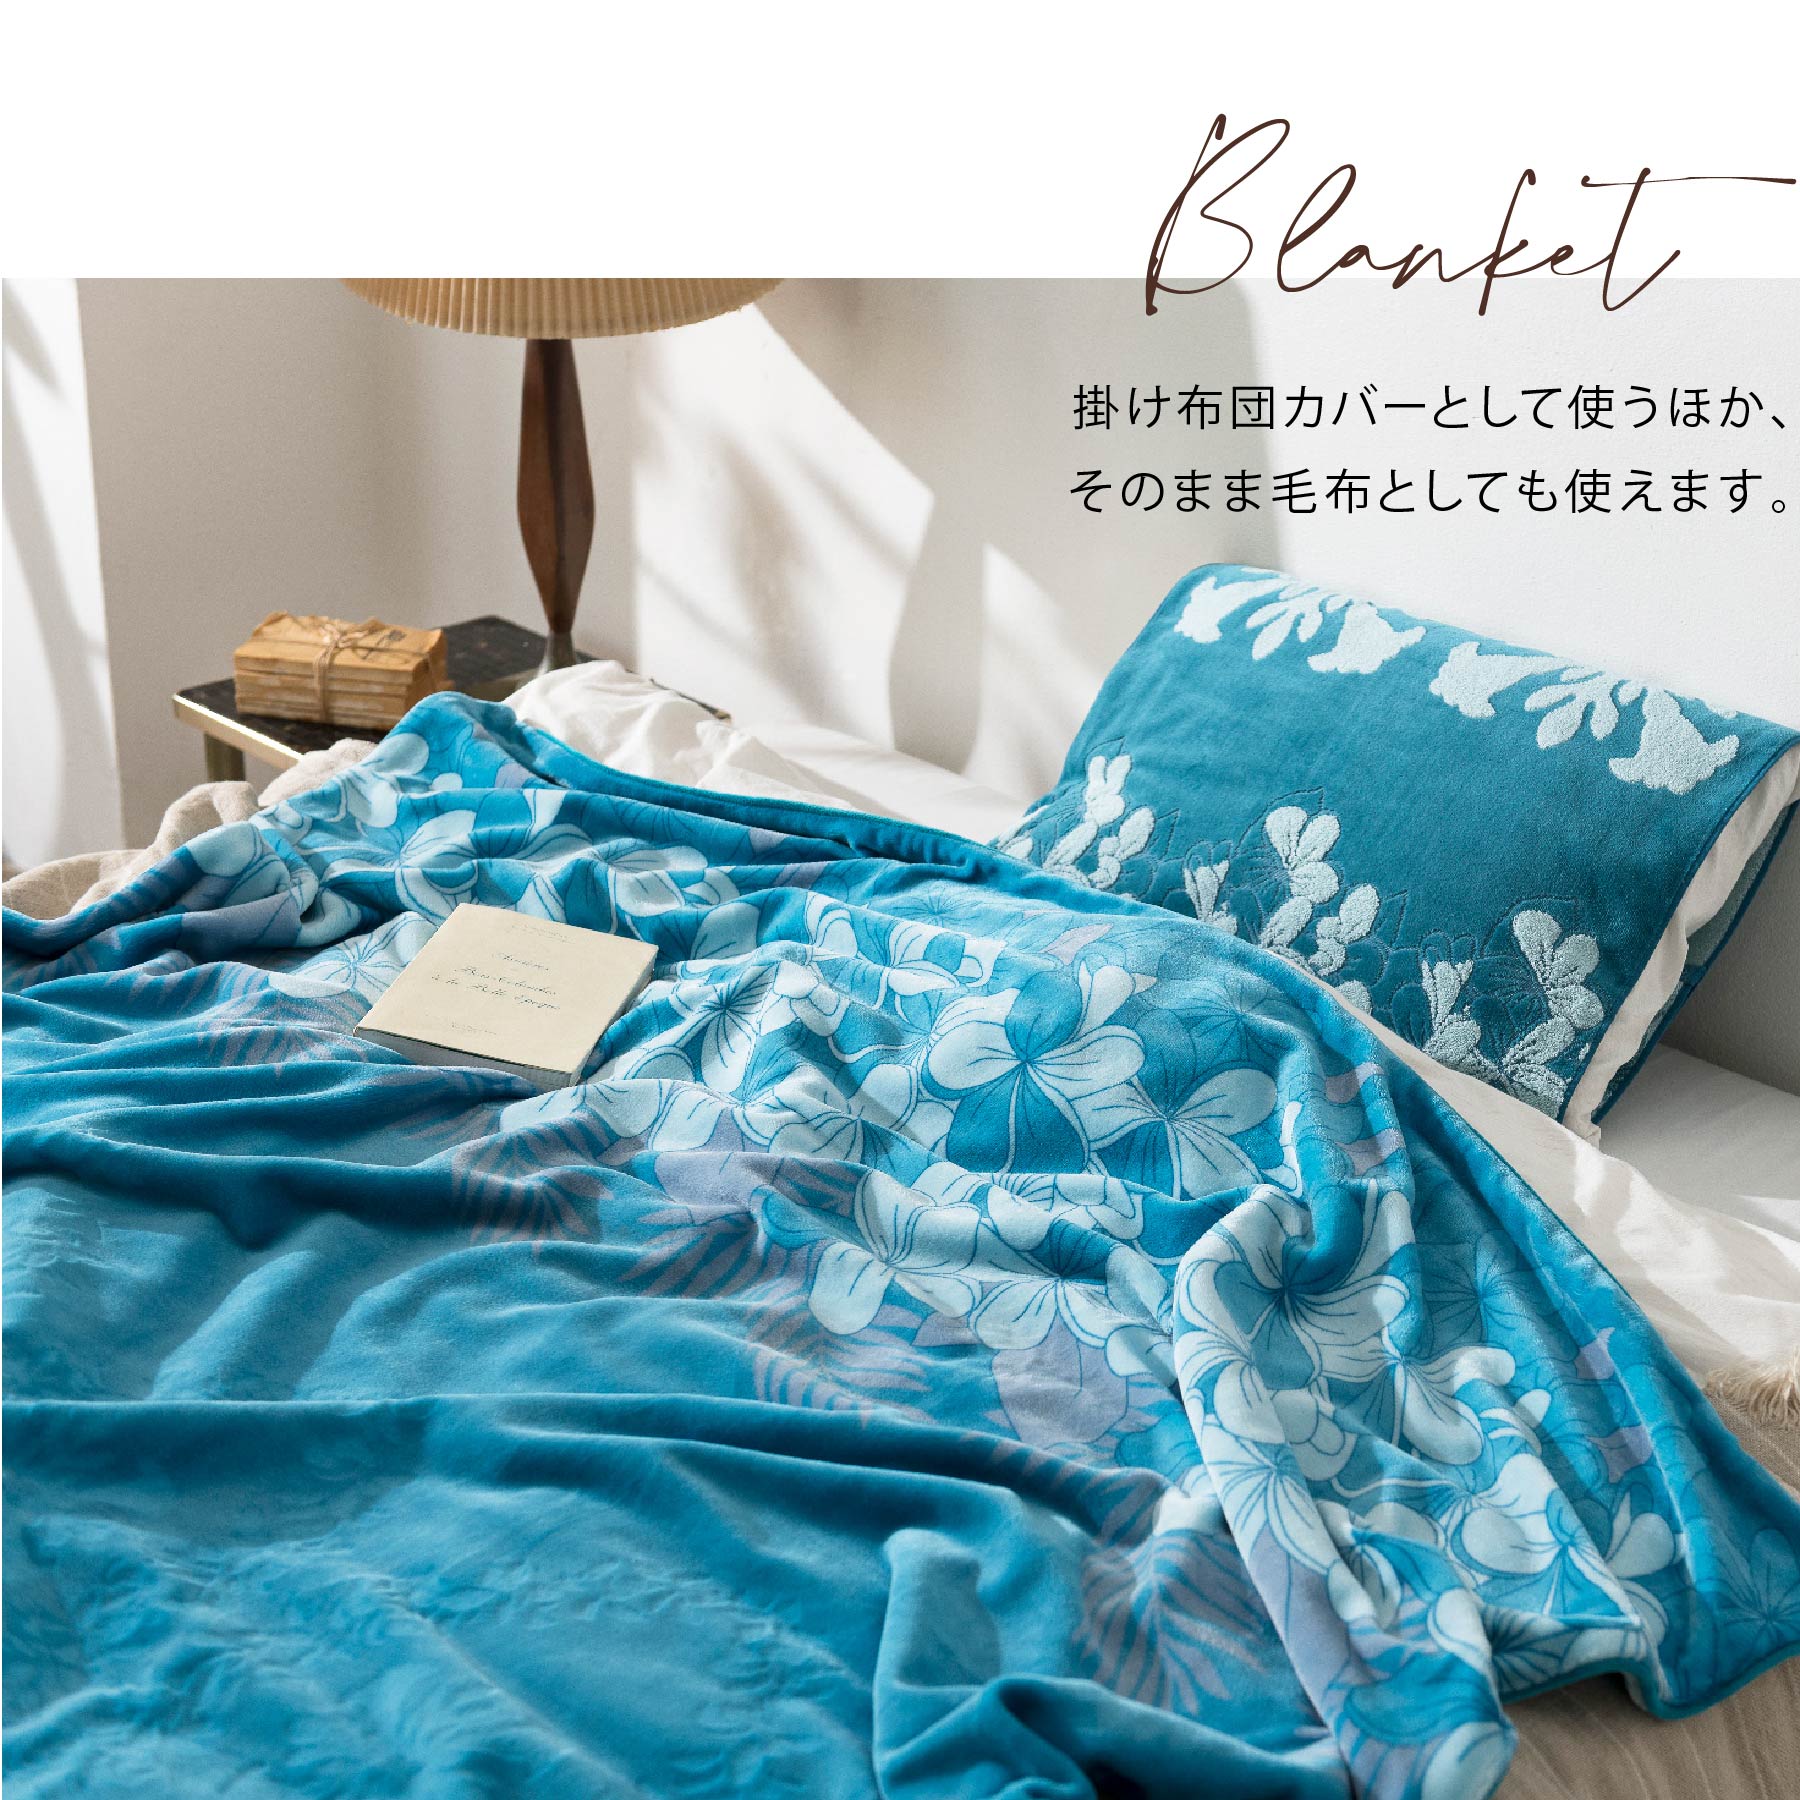 ベッドカバーのキット - 生地/糸